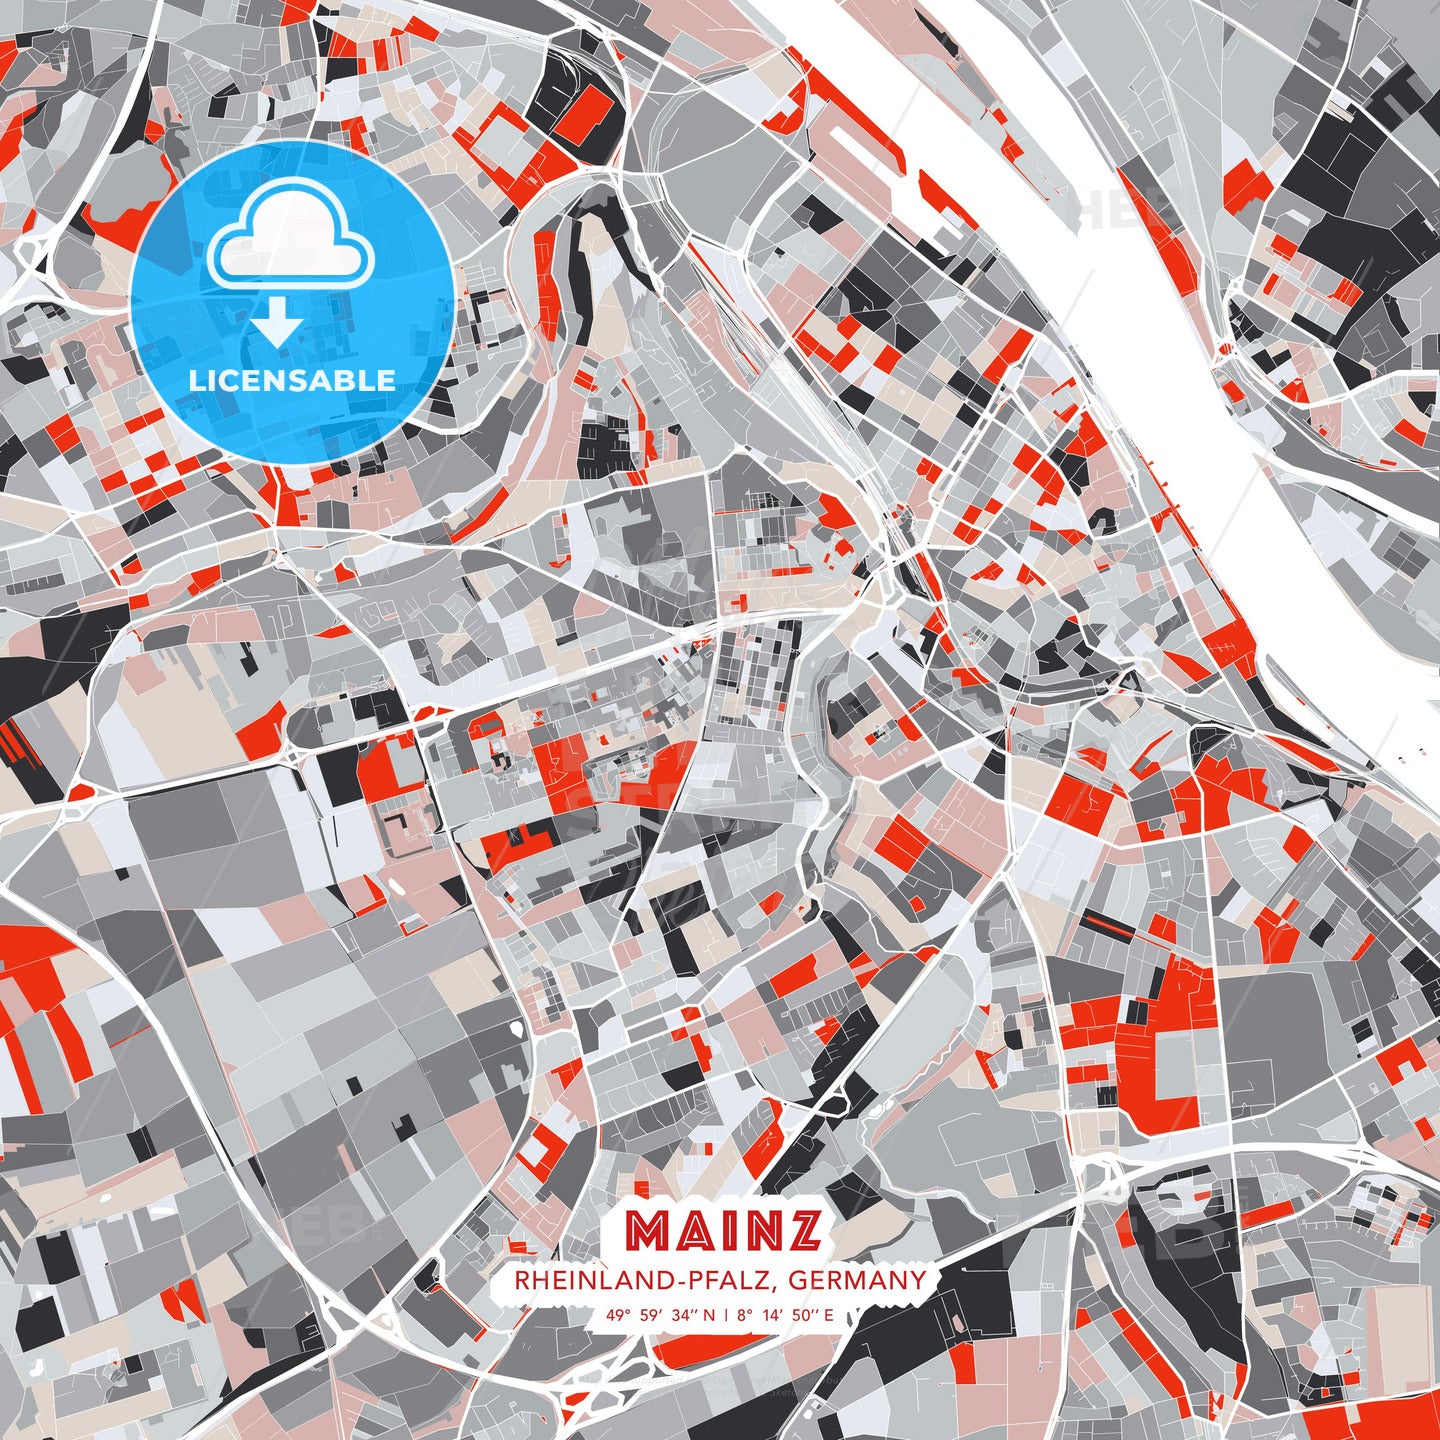 Mainz, Rheinland-Pfalz, Germany, modern map - HEBSTREITS Sketches